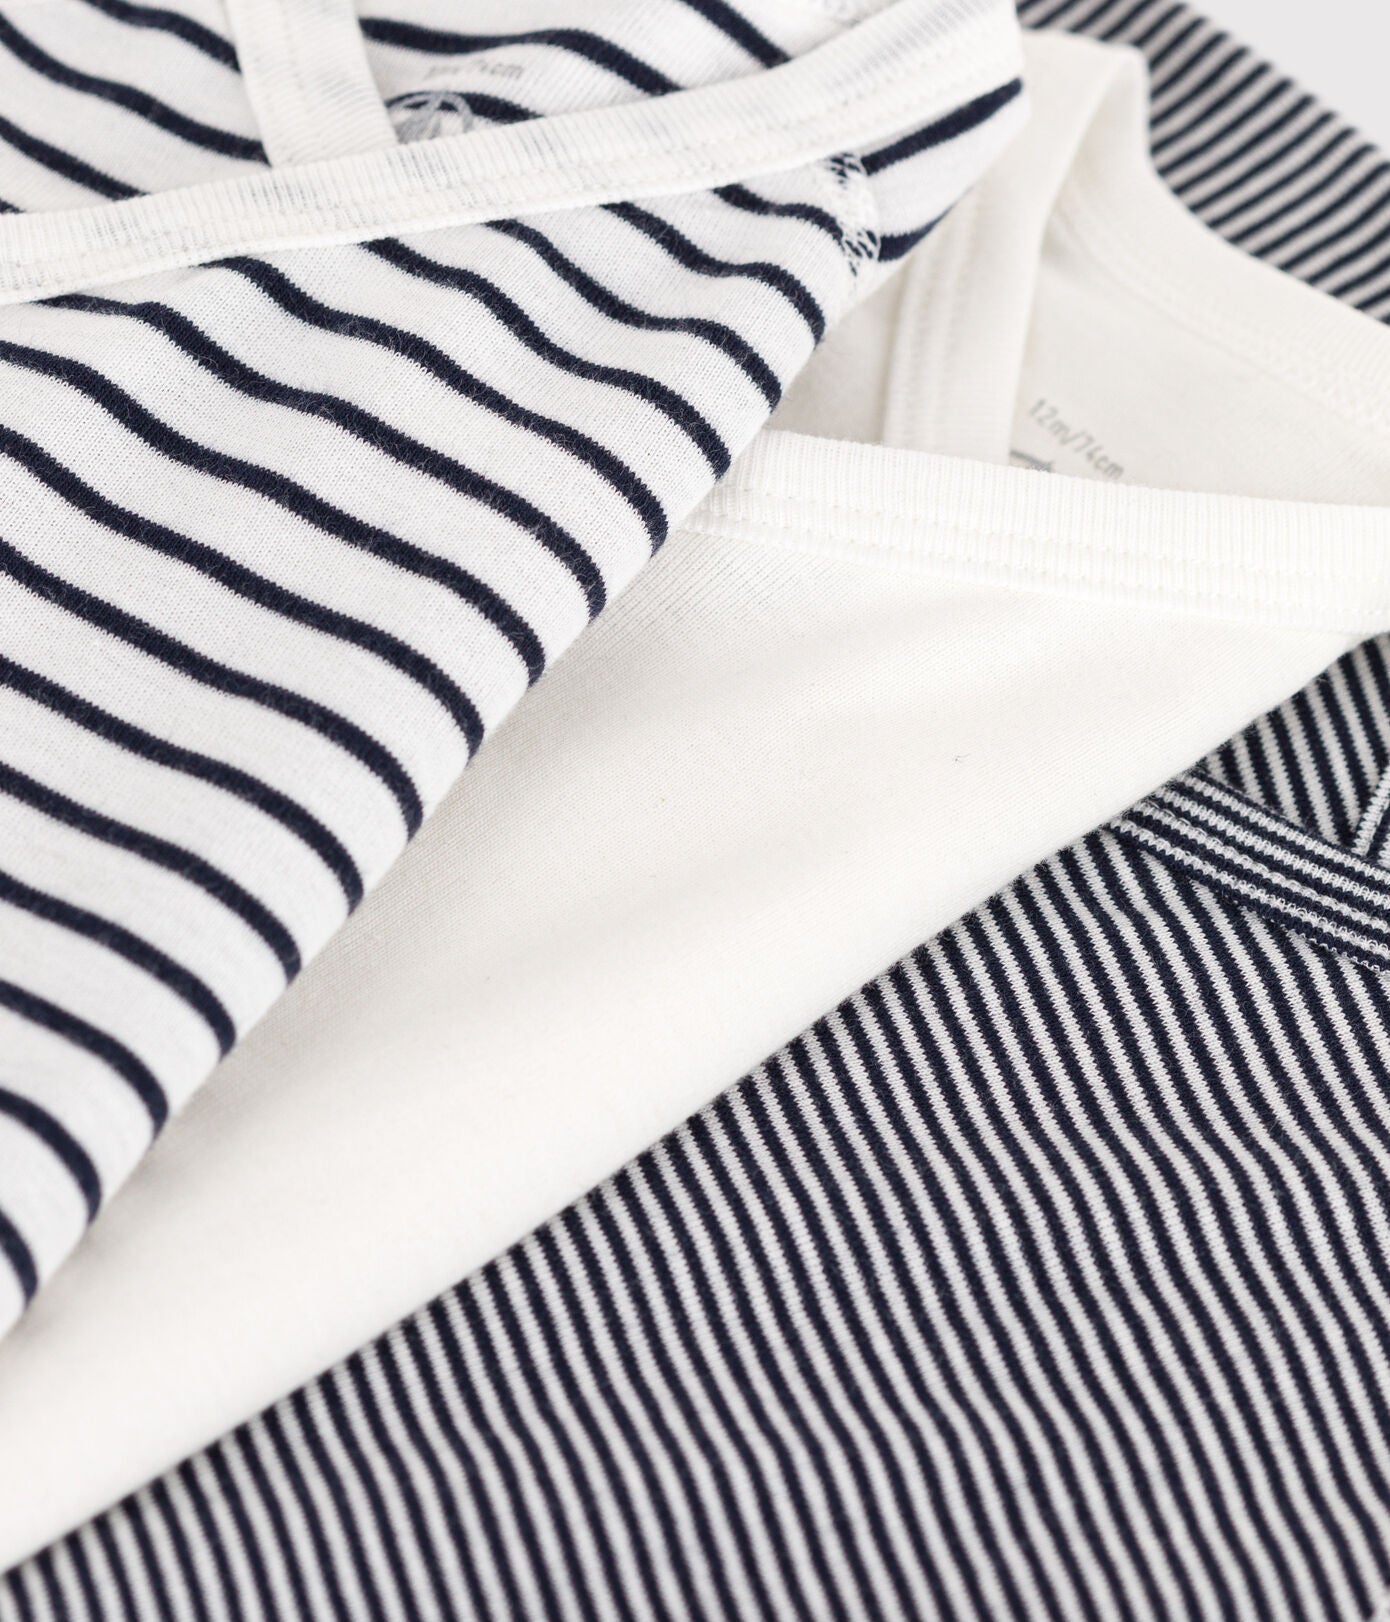 Petit Bateau - Set of 3 short-sleeved shirts